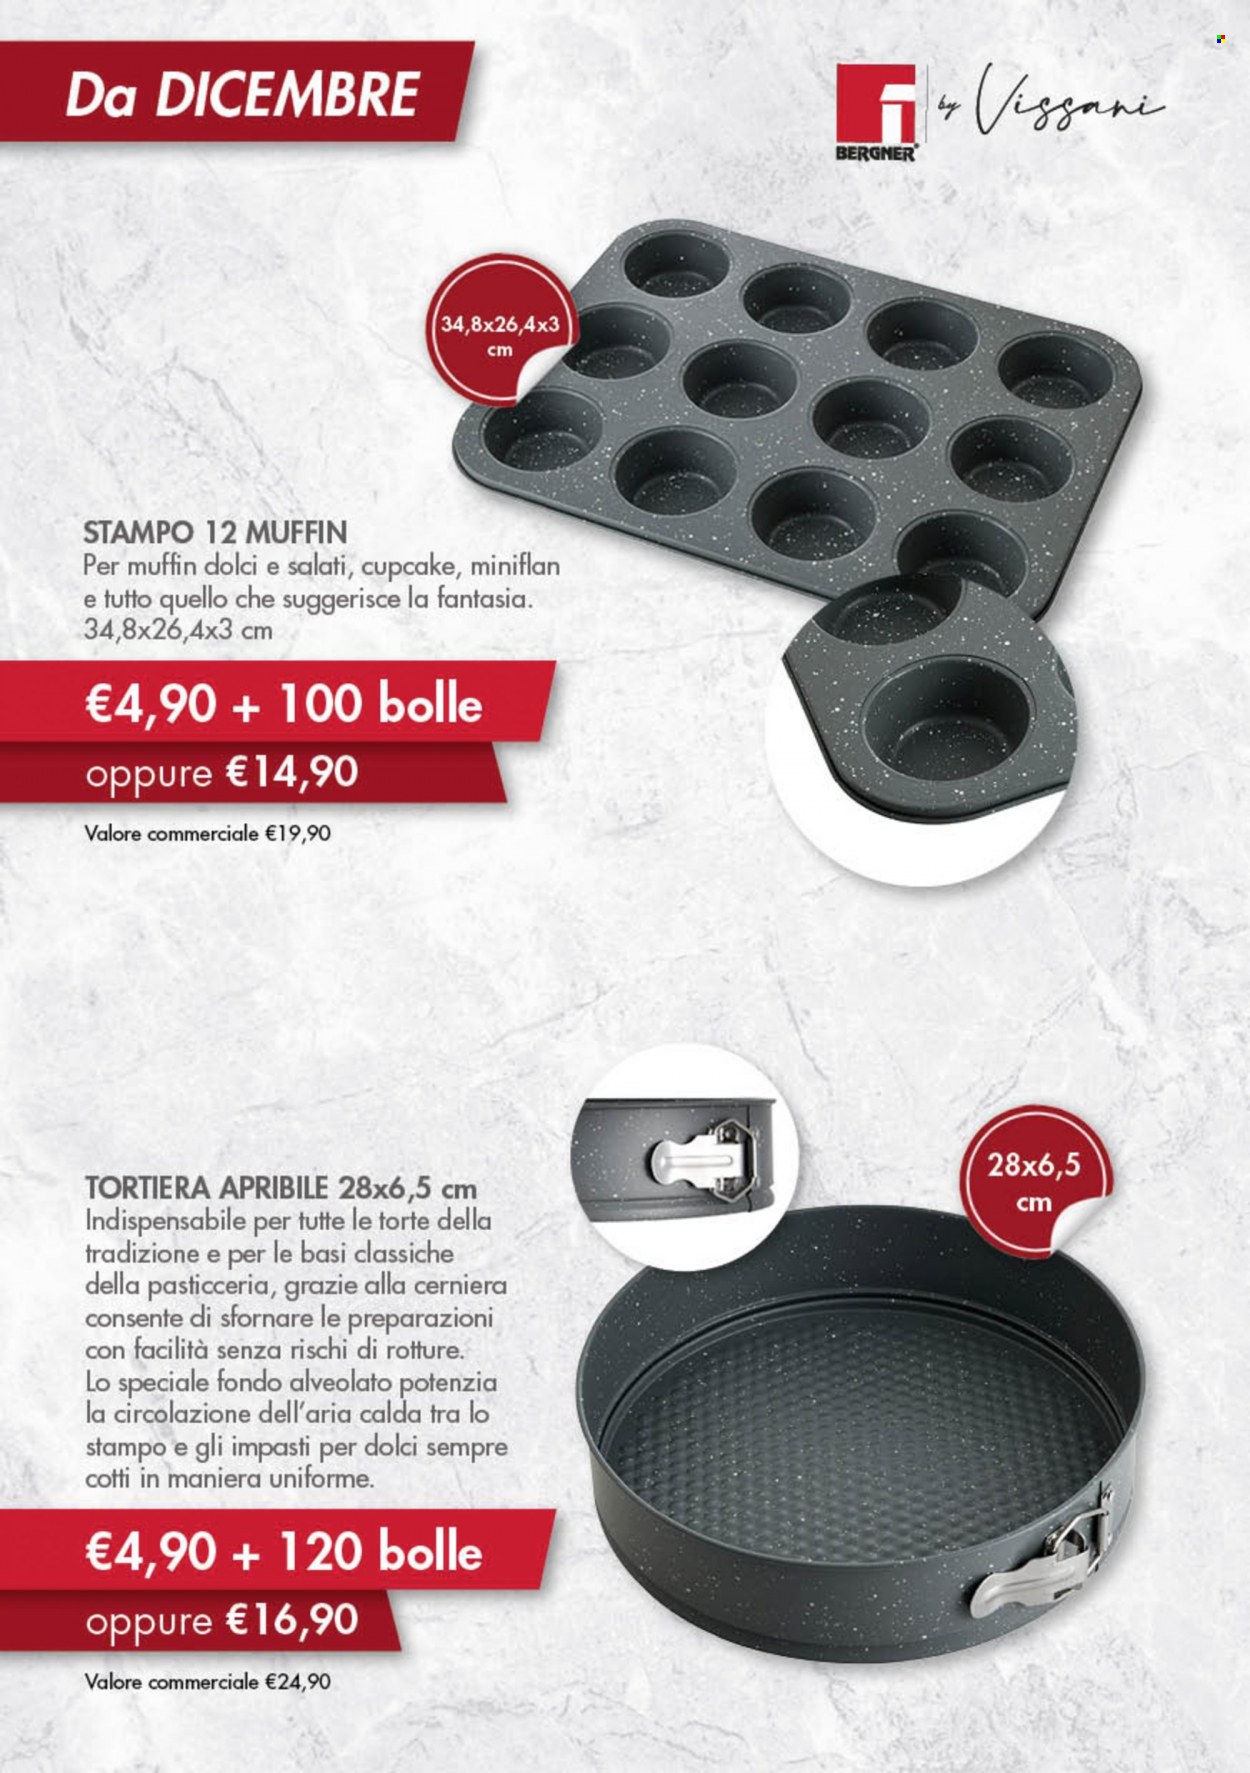 thumbnail - Volantino Acqua & Sapone - Prodotti in offerta - stampo per muffin, tortiera, stampo. Pagina 18.